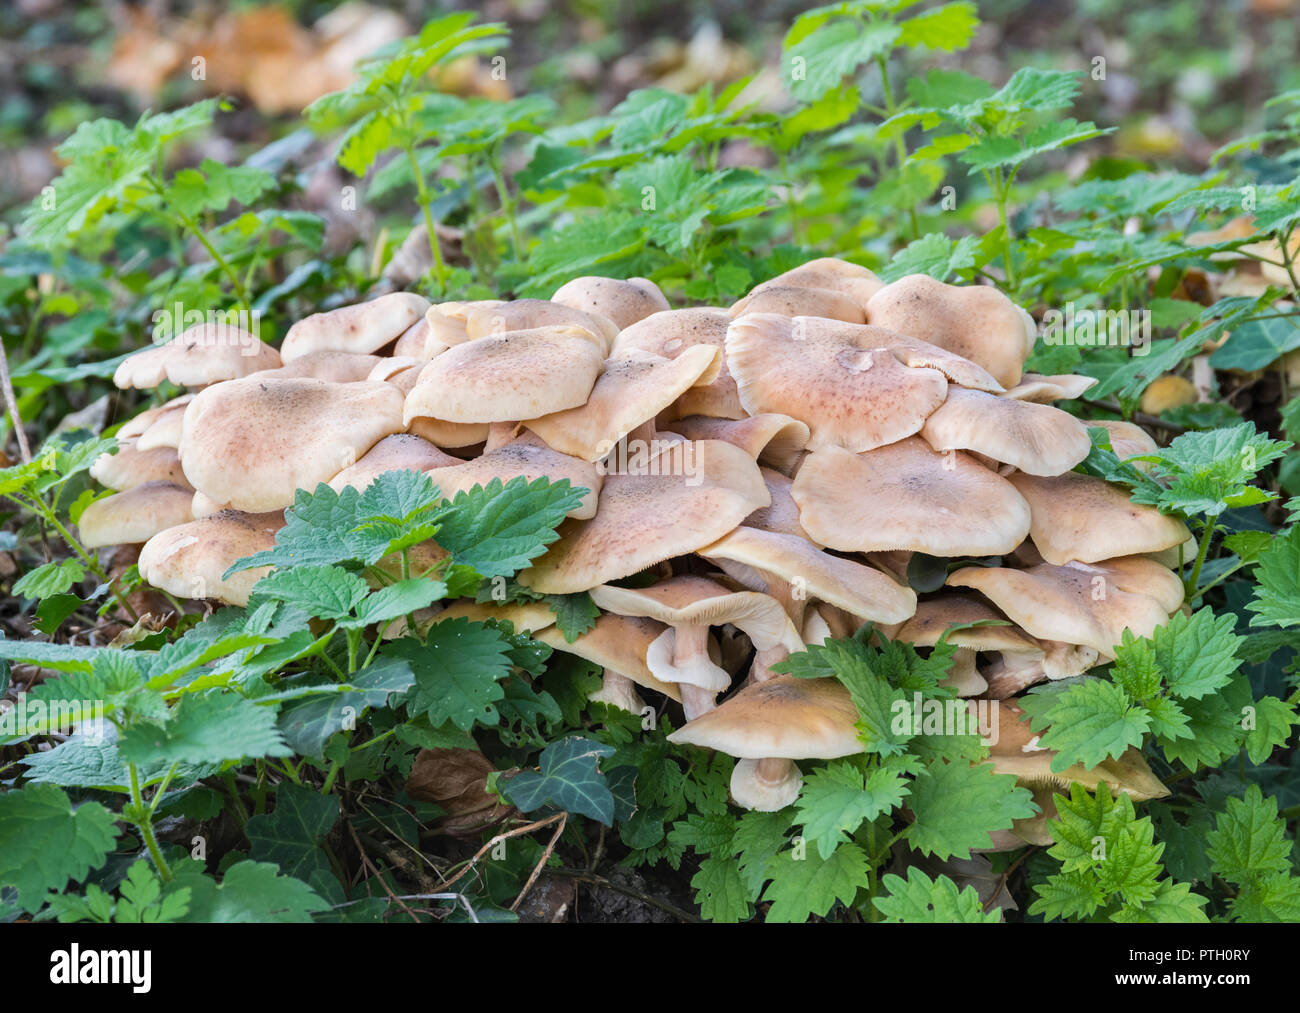 Bois massif de champignons champignons Blewit (Clitocybe nuda ou Lepista nuda) croissant au début de l'automne dans la forêt dans le West Sussex, Royaume-Uni. Banque D'Images